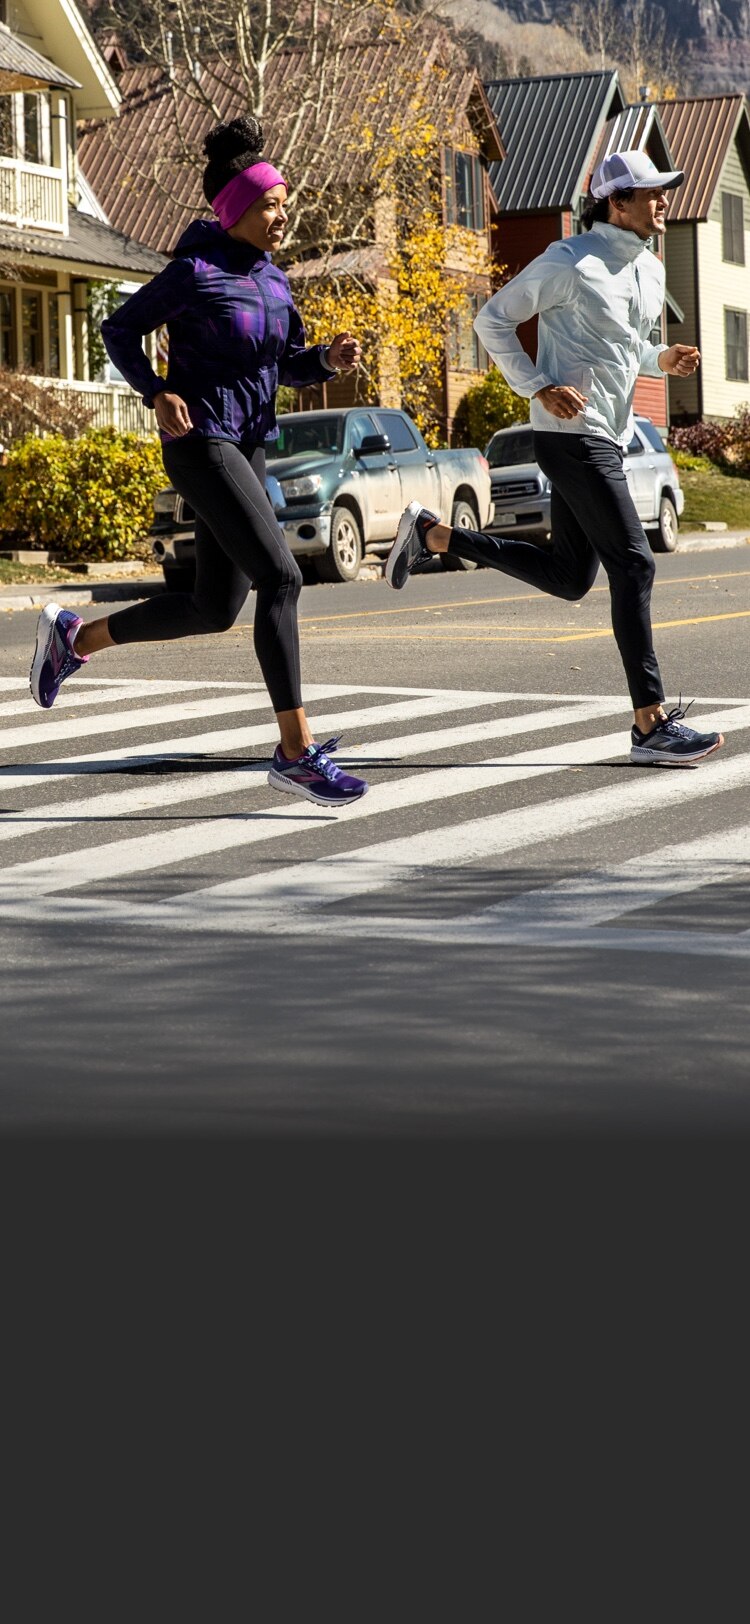 Two runners running across a street